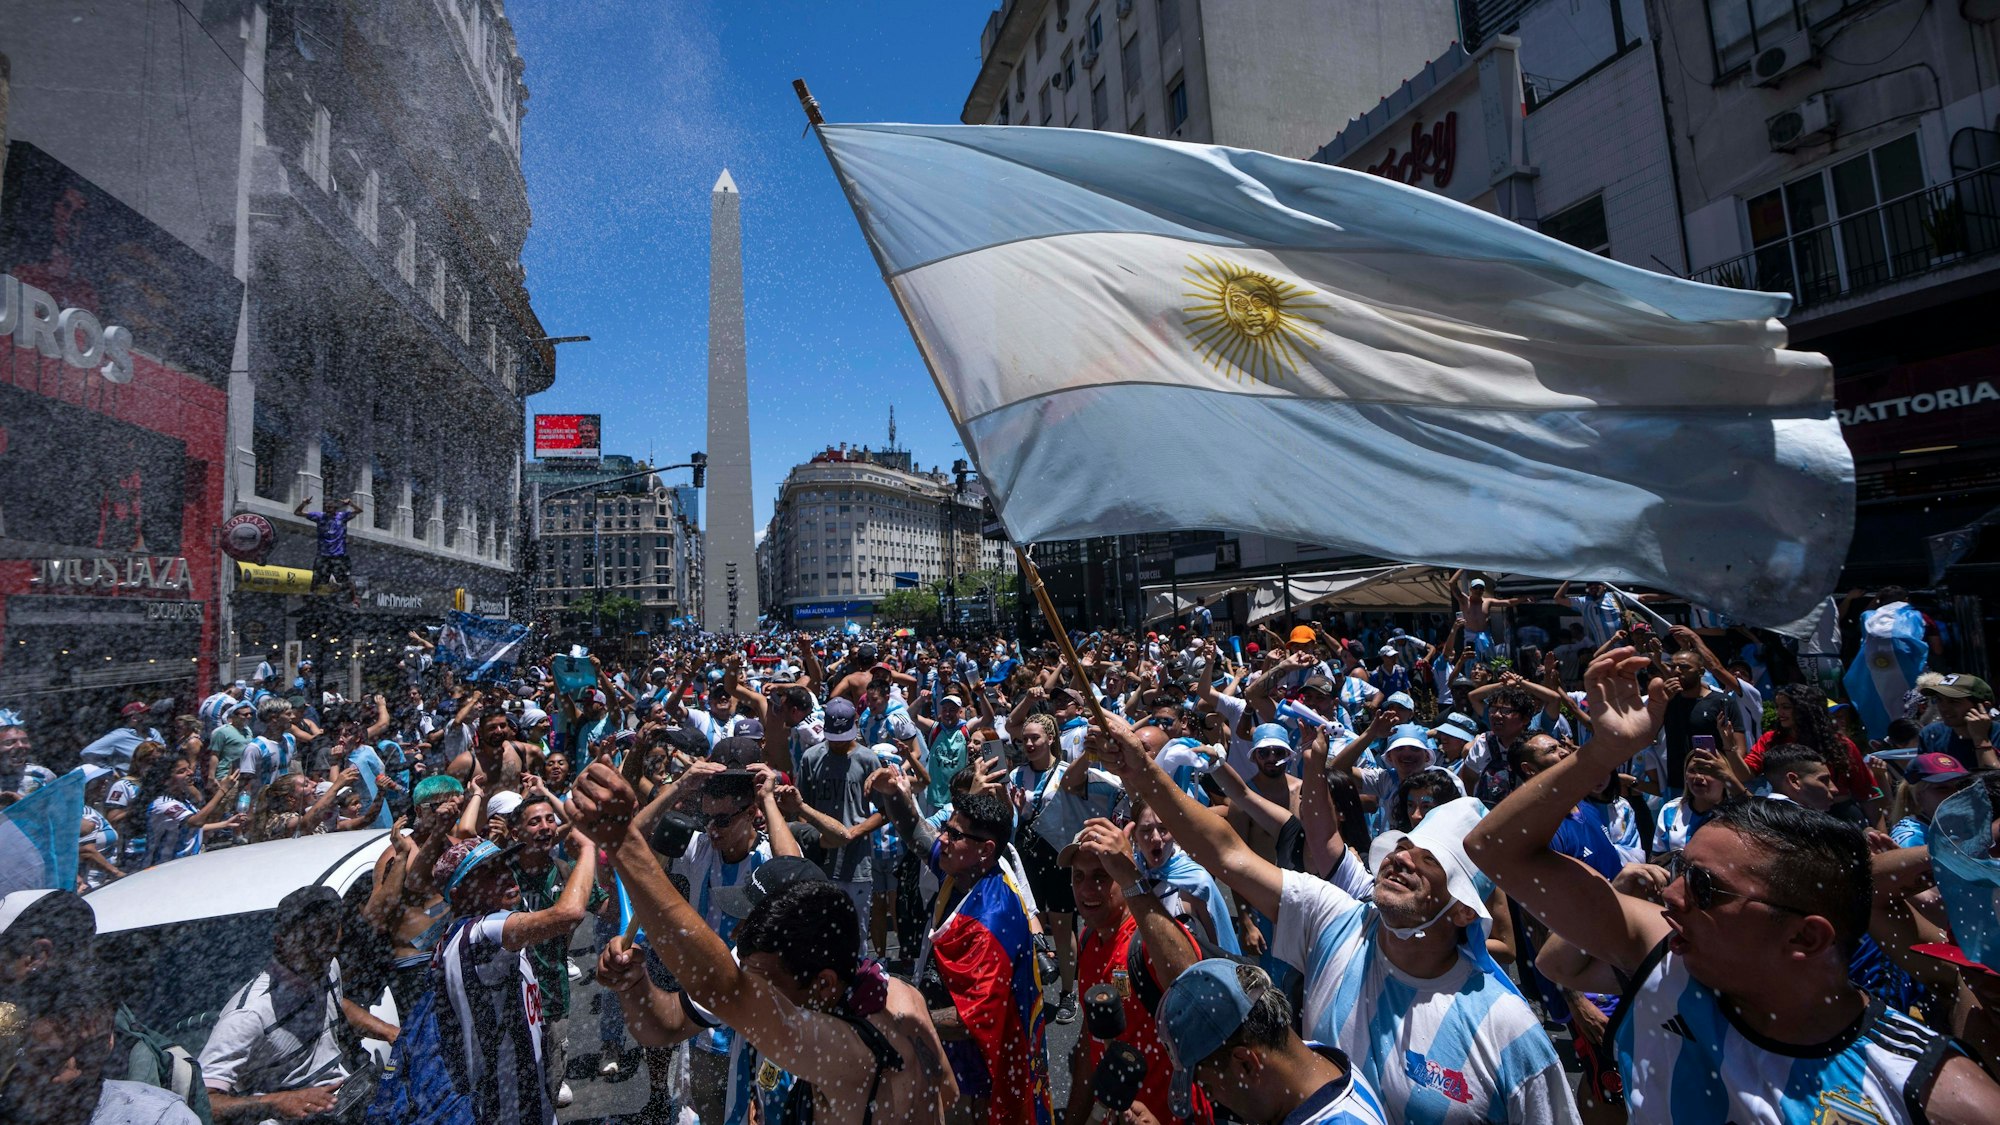 Ein Fan schwenkt die argentinische Flagge.